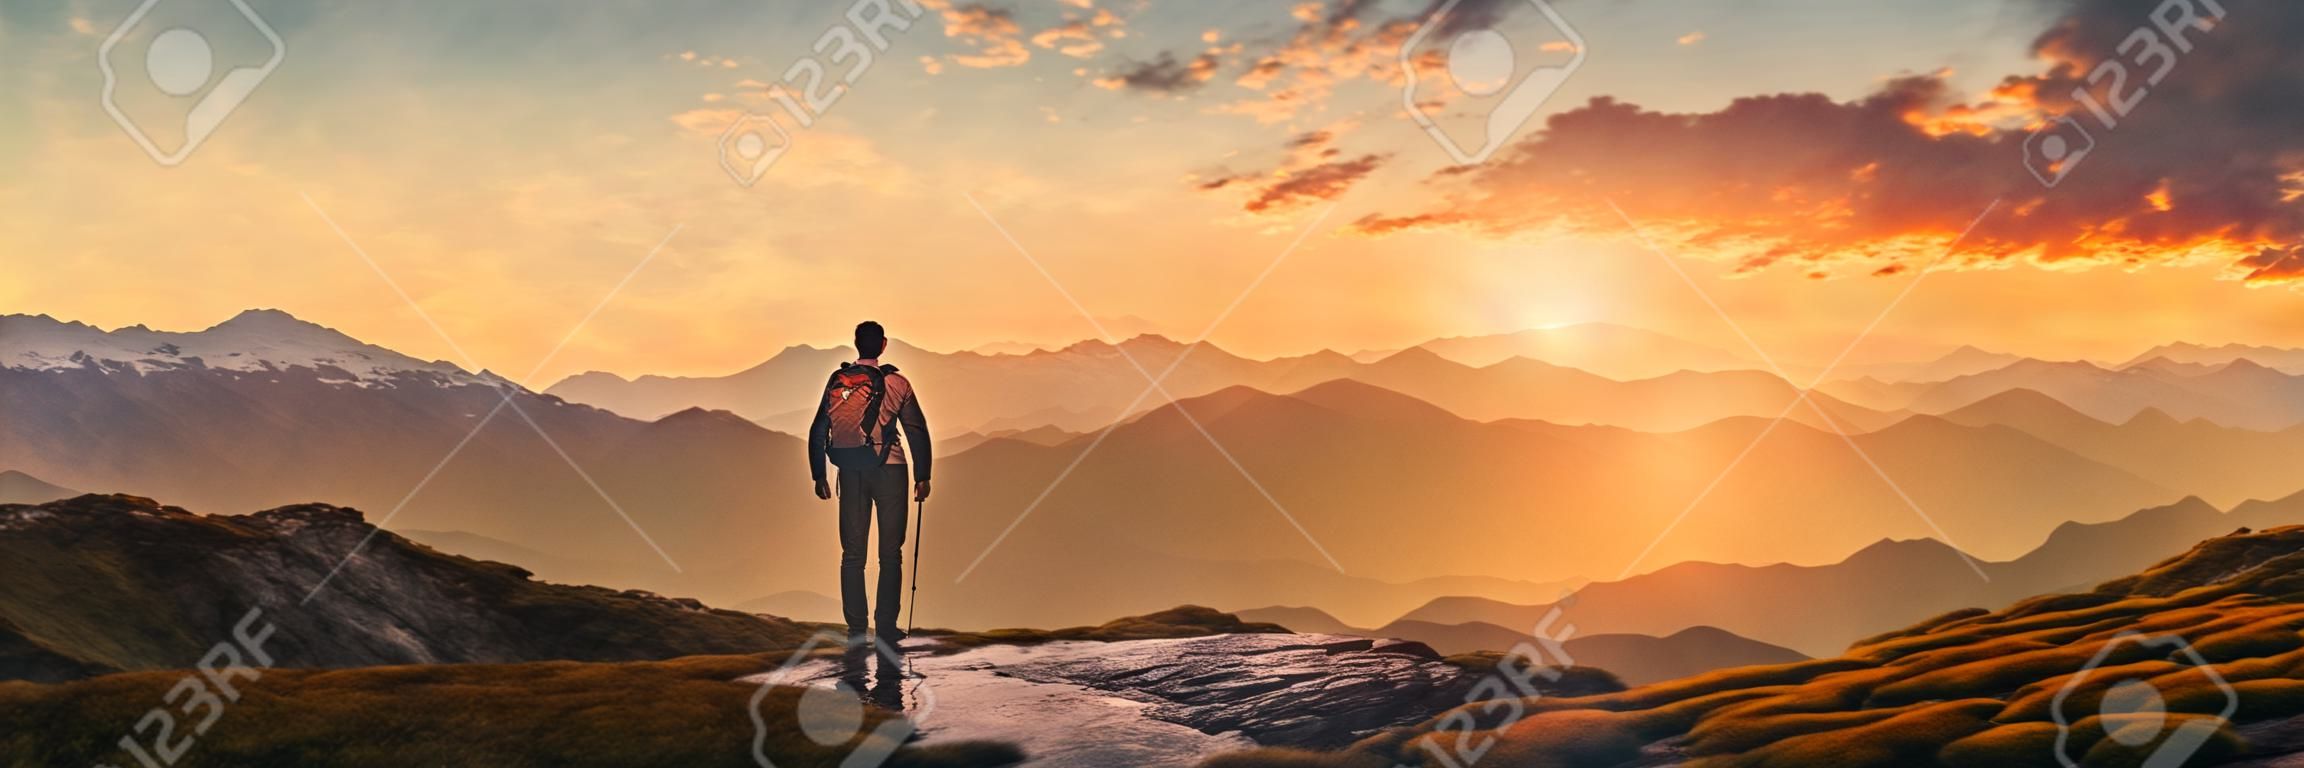 Randonneur dans les montagnes au coucher du soleil vue panoramique